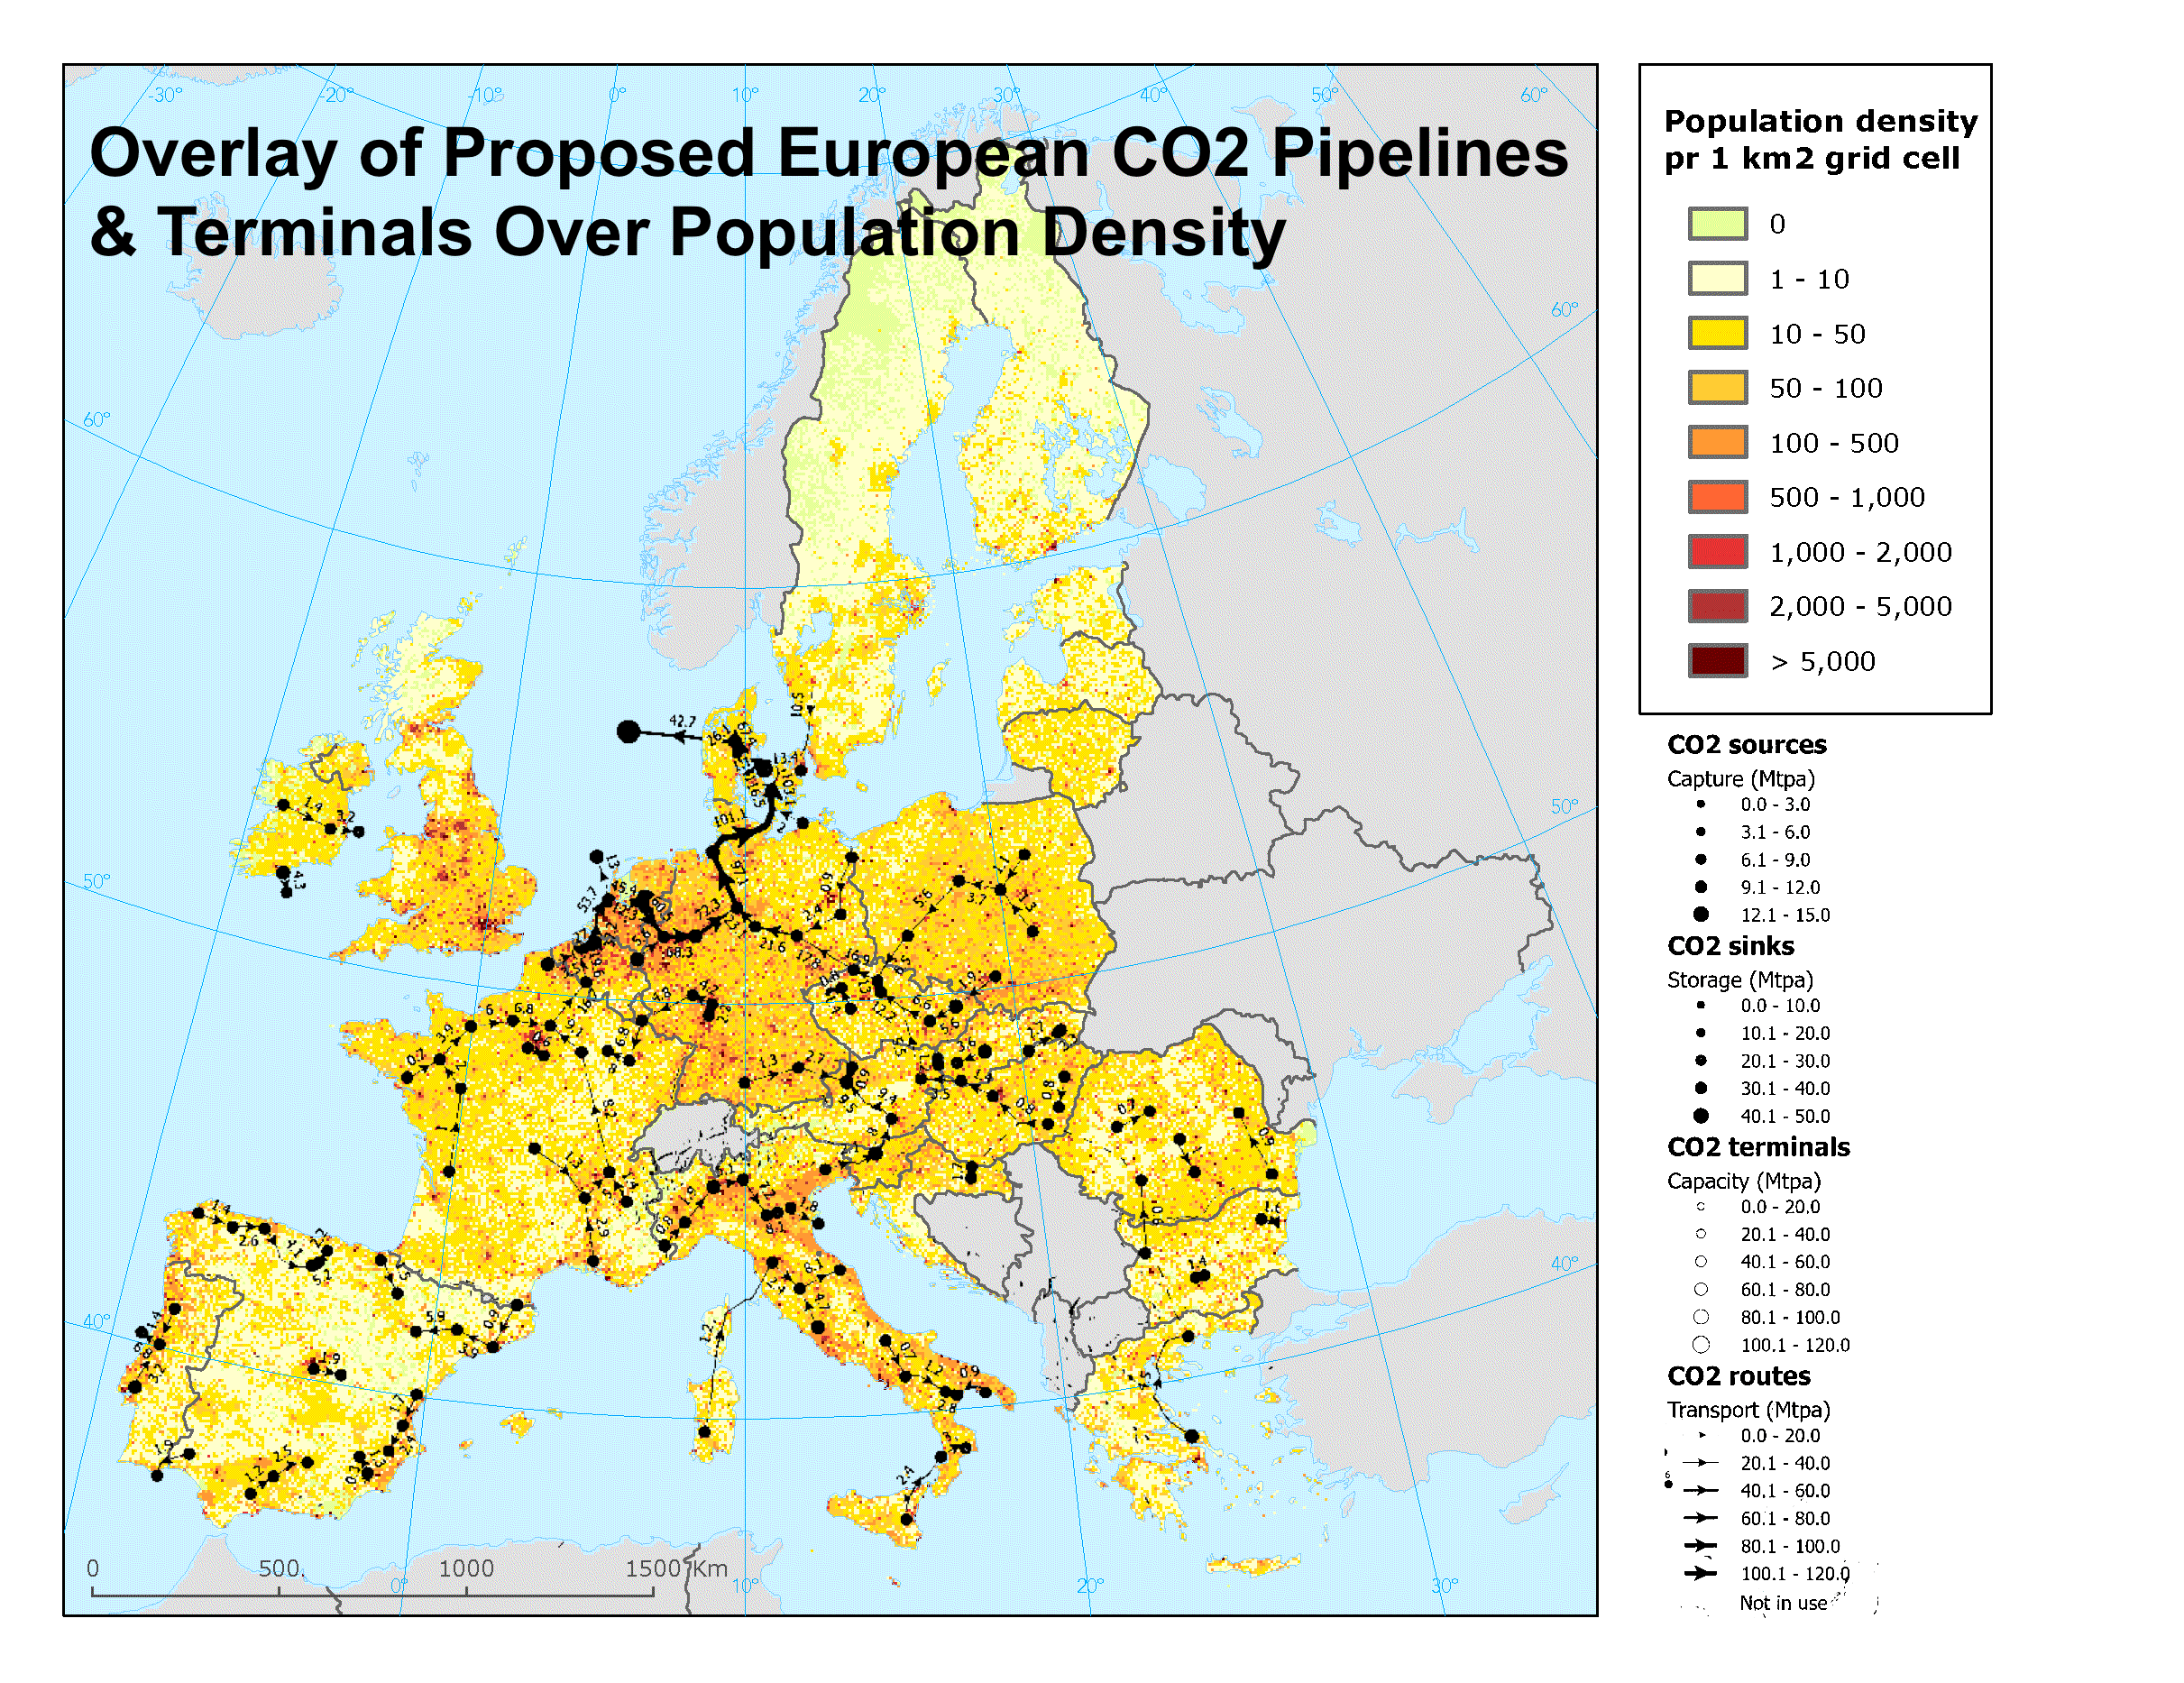 著者によるヨーロッパの人口密度の地図上に提案されているヨーロッパの CO2 パイプラインとターミナルを重ねたもの